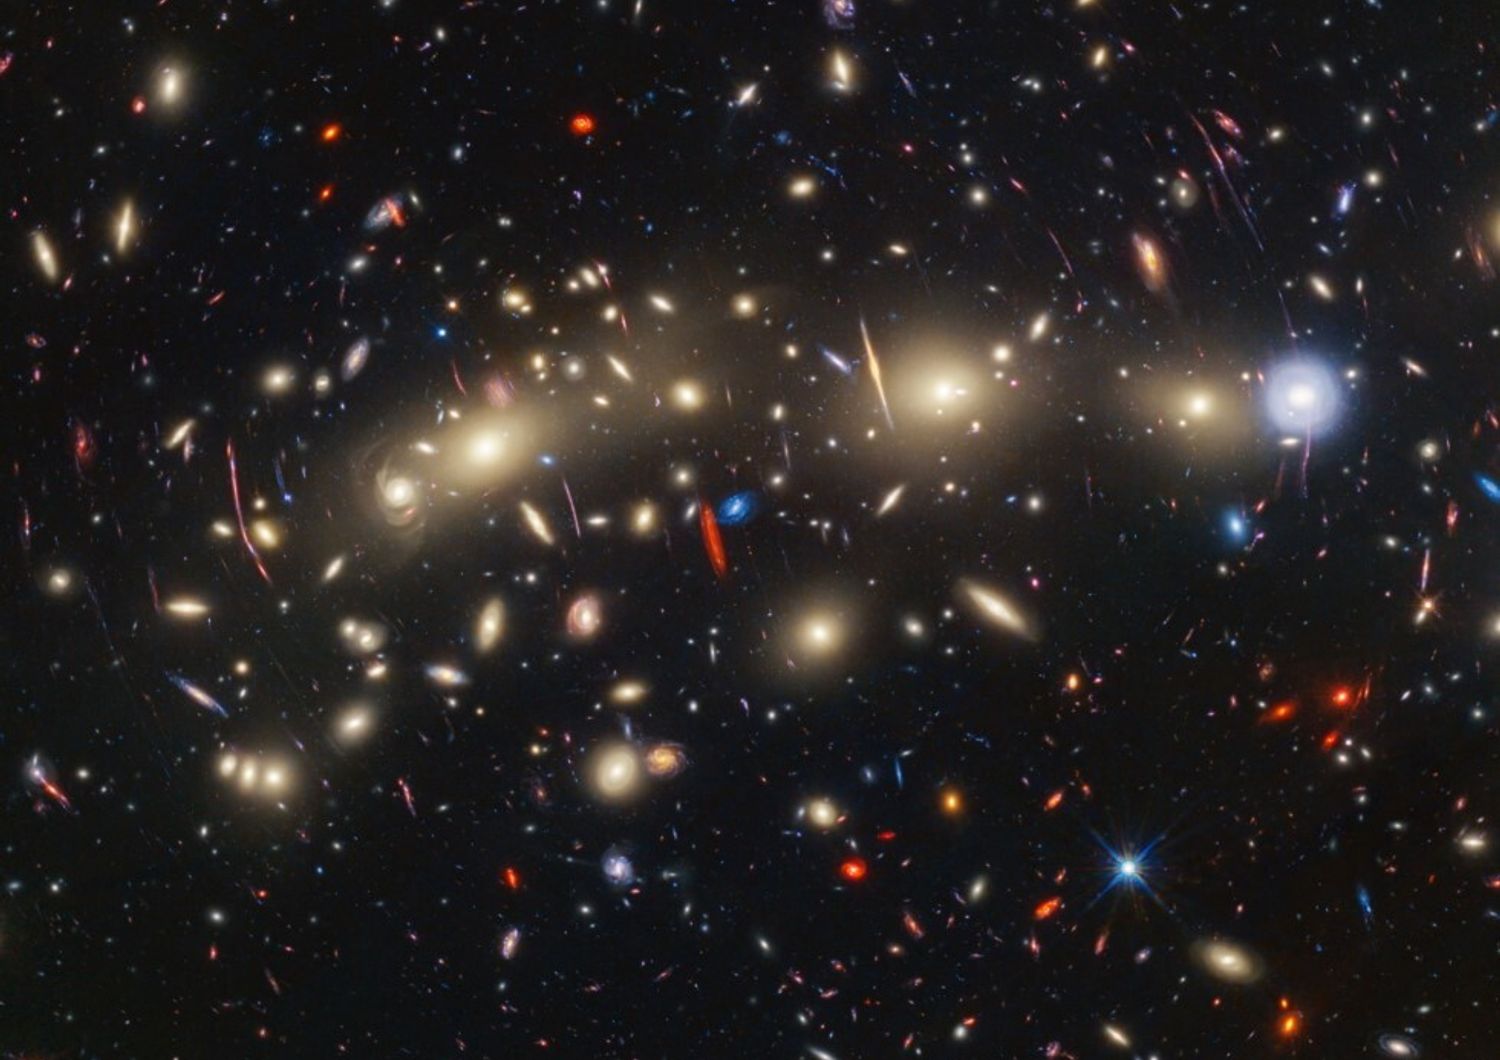 Vista pancromatica dell&rsquo;ammasso galattico MACS0416 ripreso dai telescopi Webb e Hubble&nbsp;